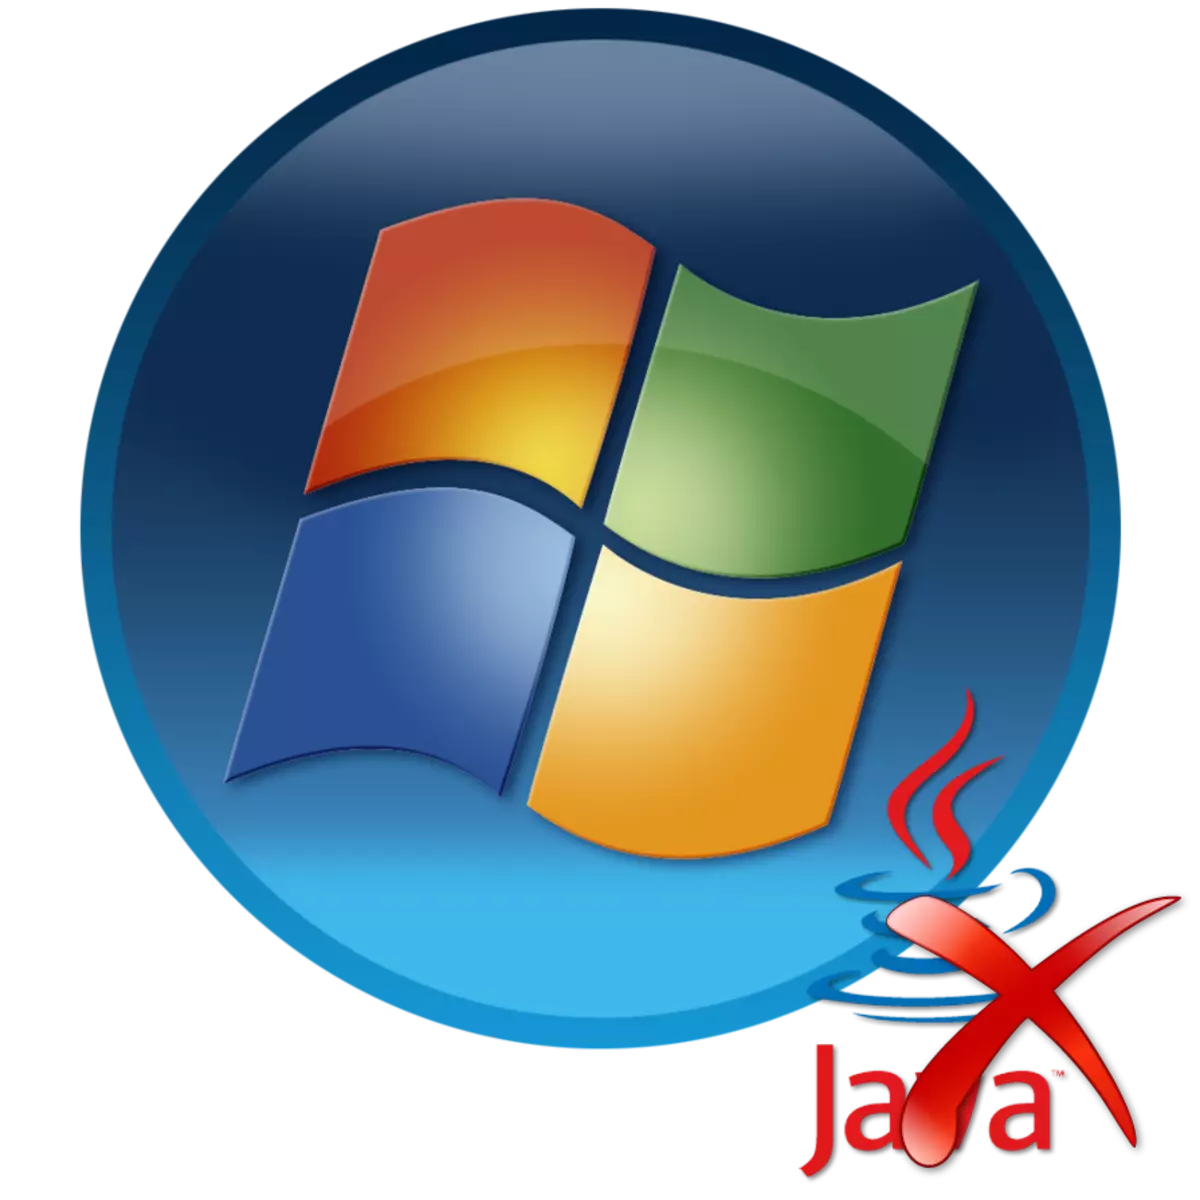 Ahoana ny fomba fanesorana ny Java amin'ny solosaina amin'ny Windows 7